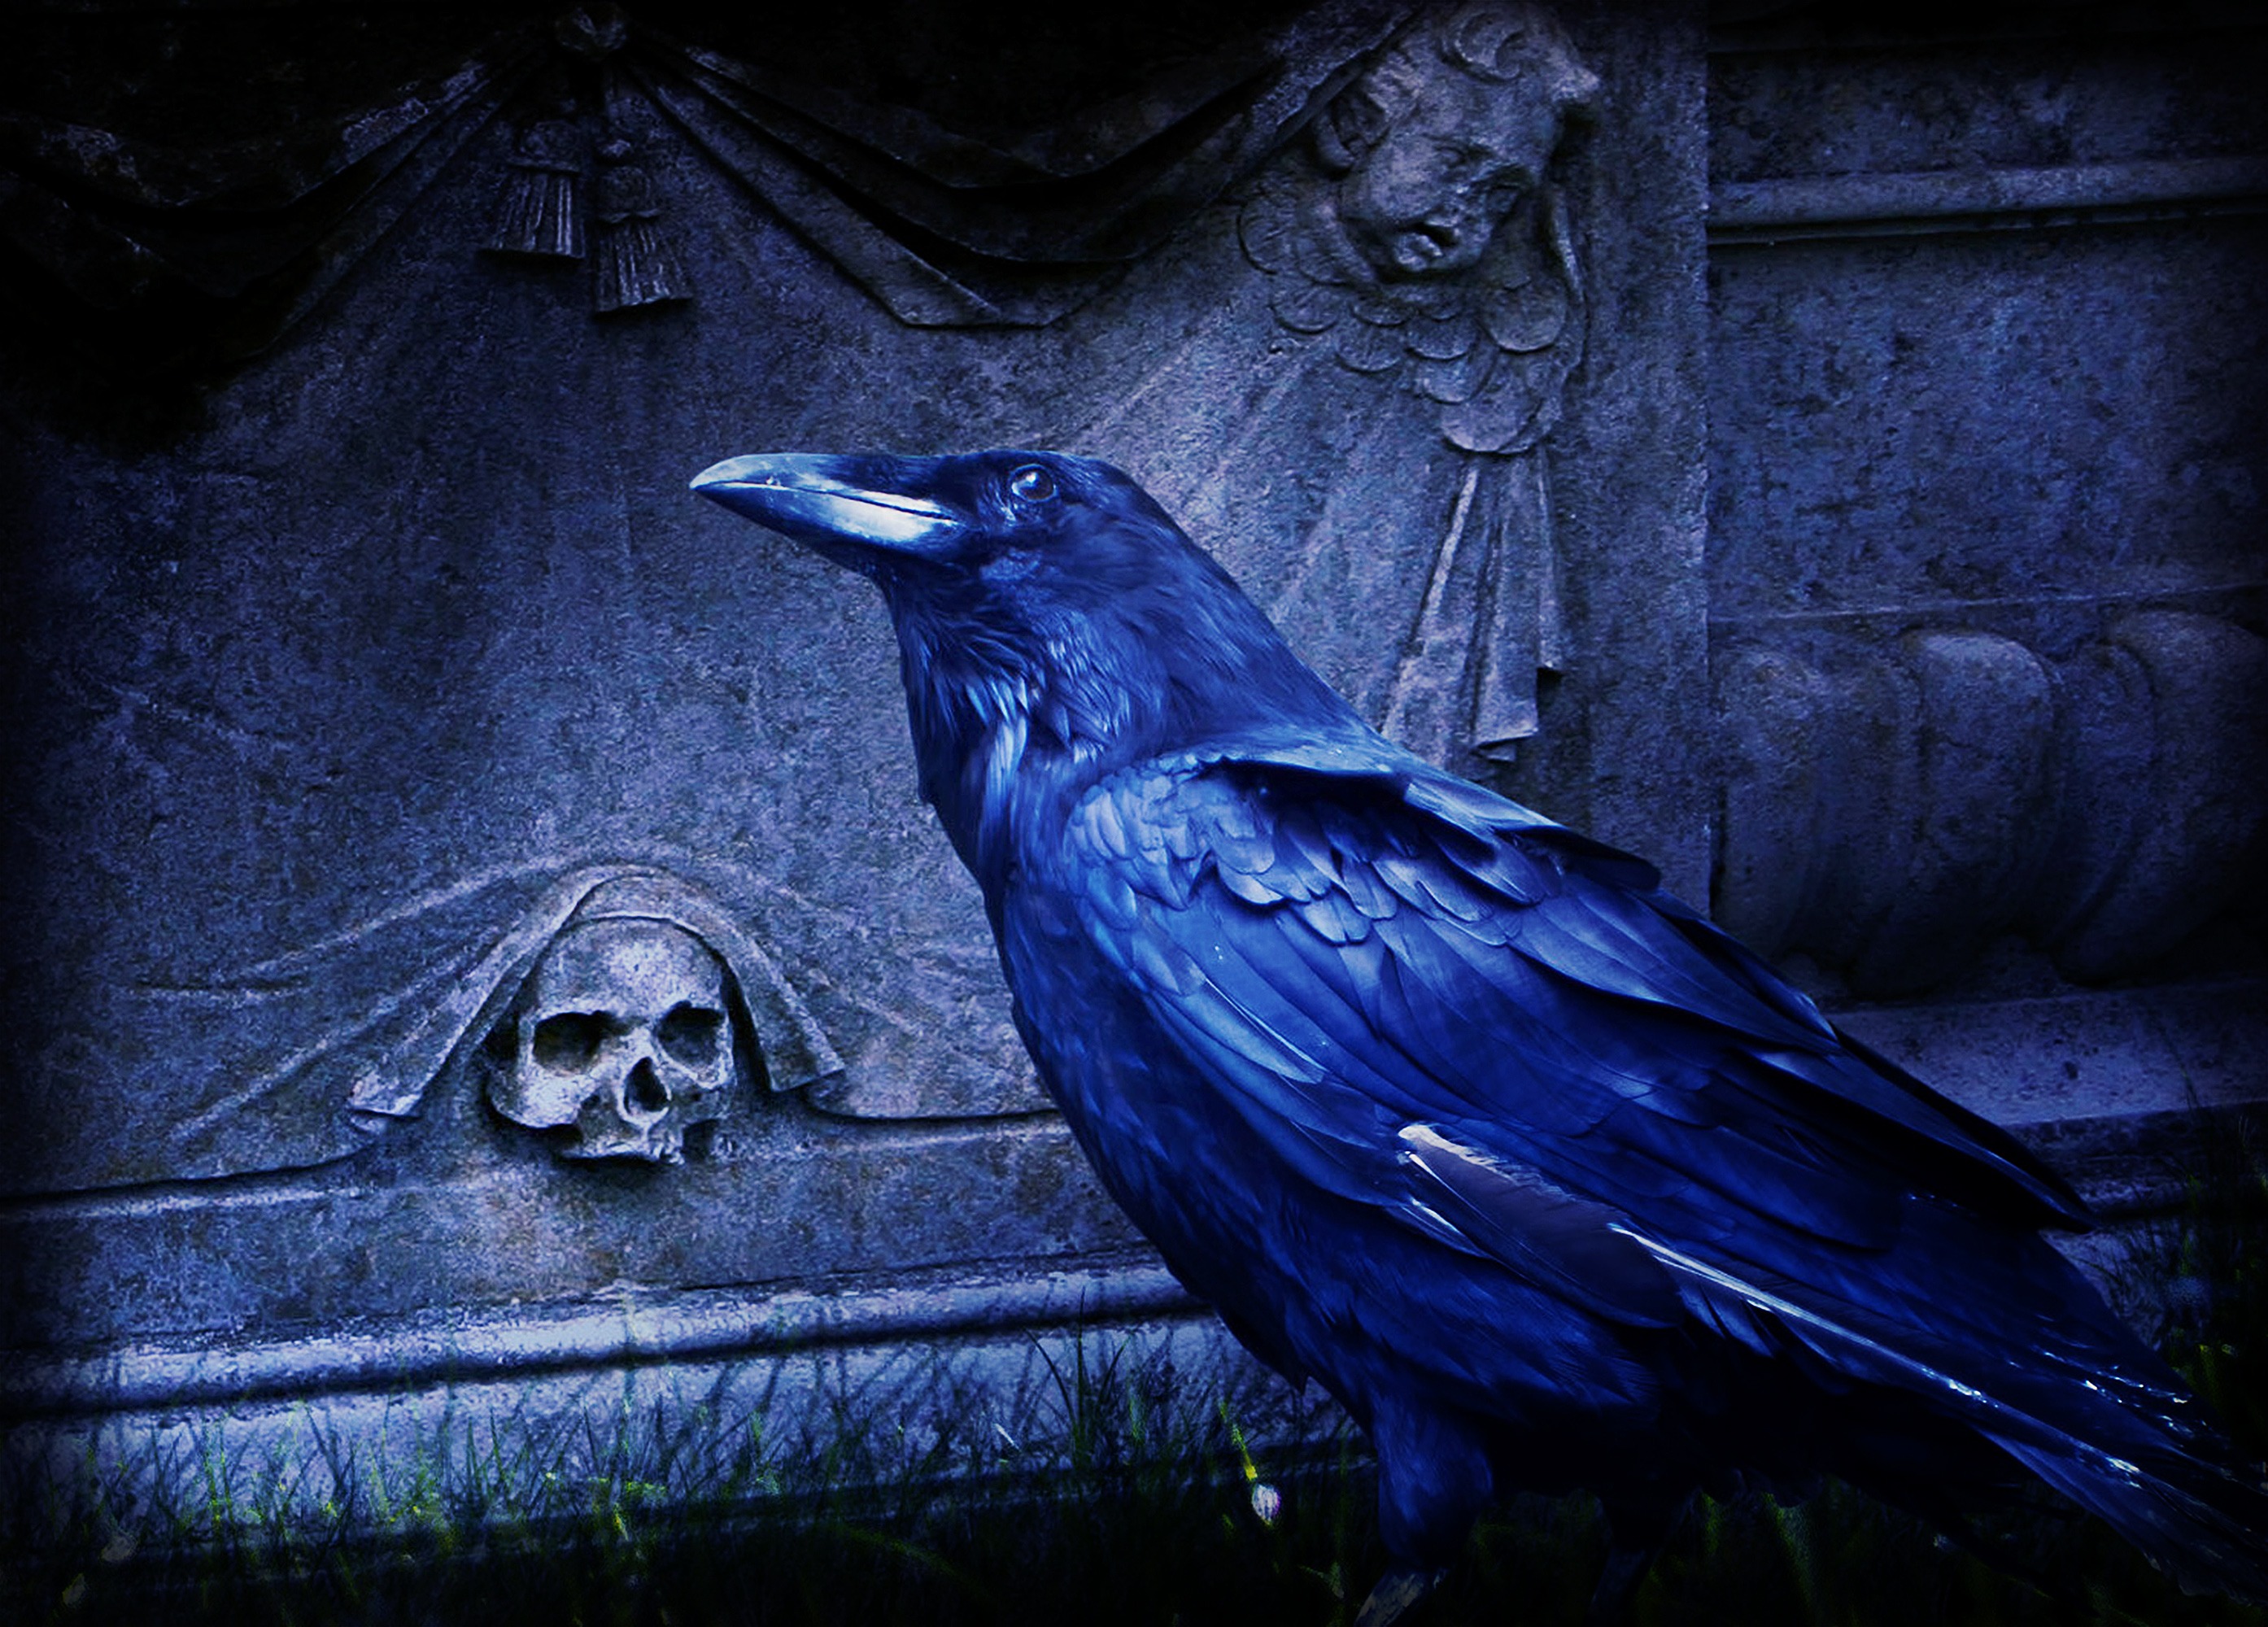 一扇黑色的大门矗立在墓室旁边